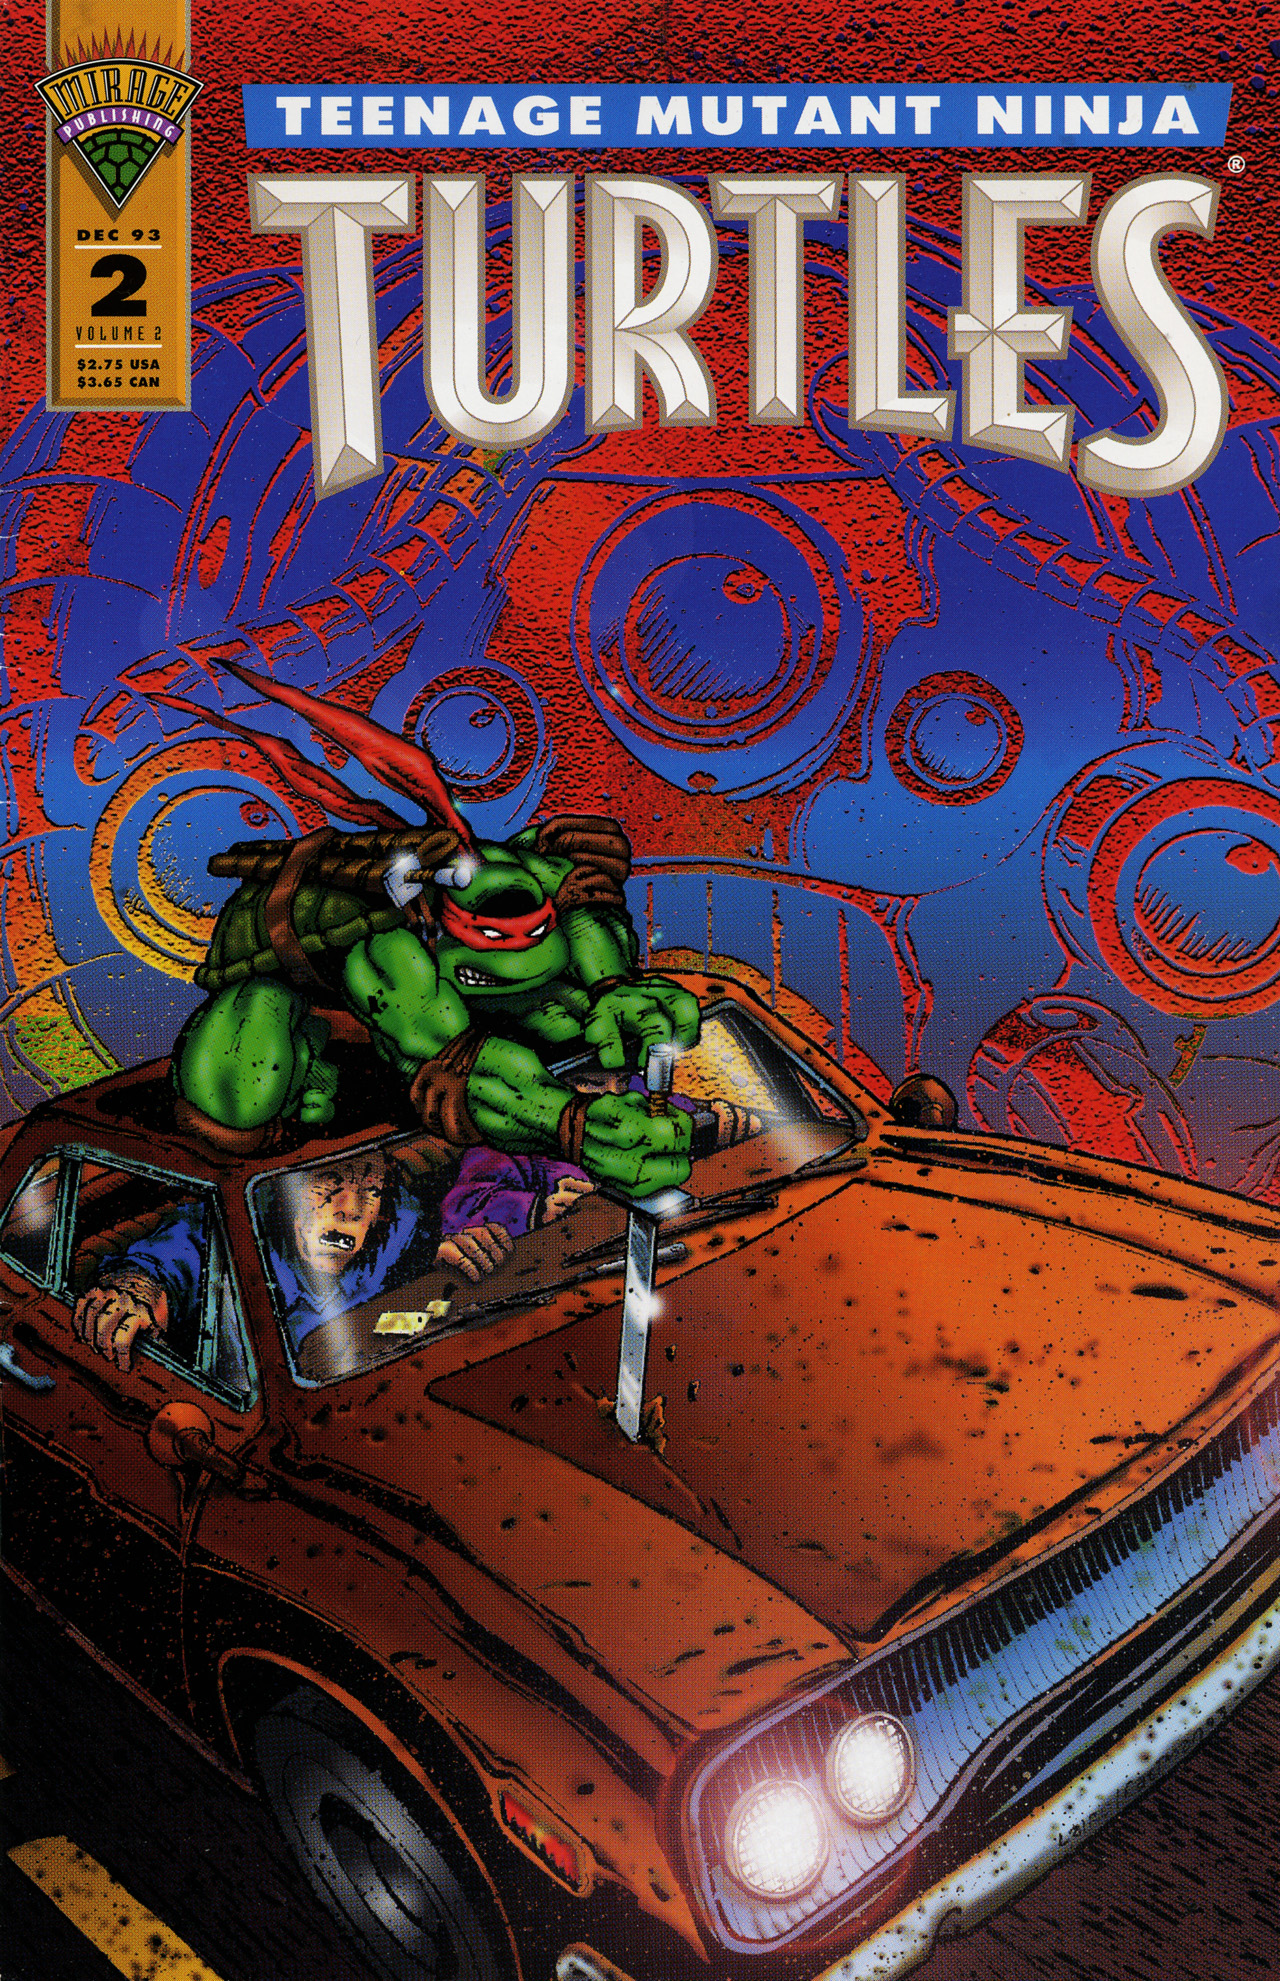 Teenage Mutant Ninja Turtles (1993) Issue #2 #2 - English 1